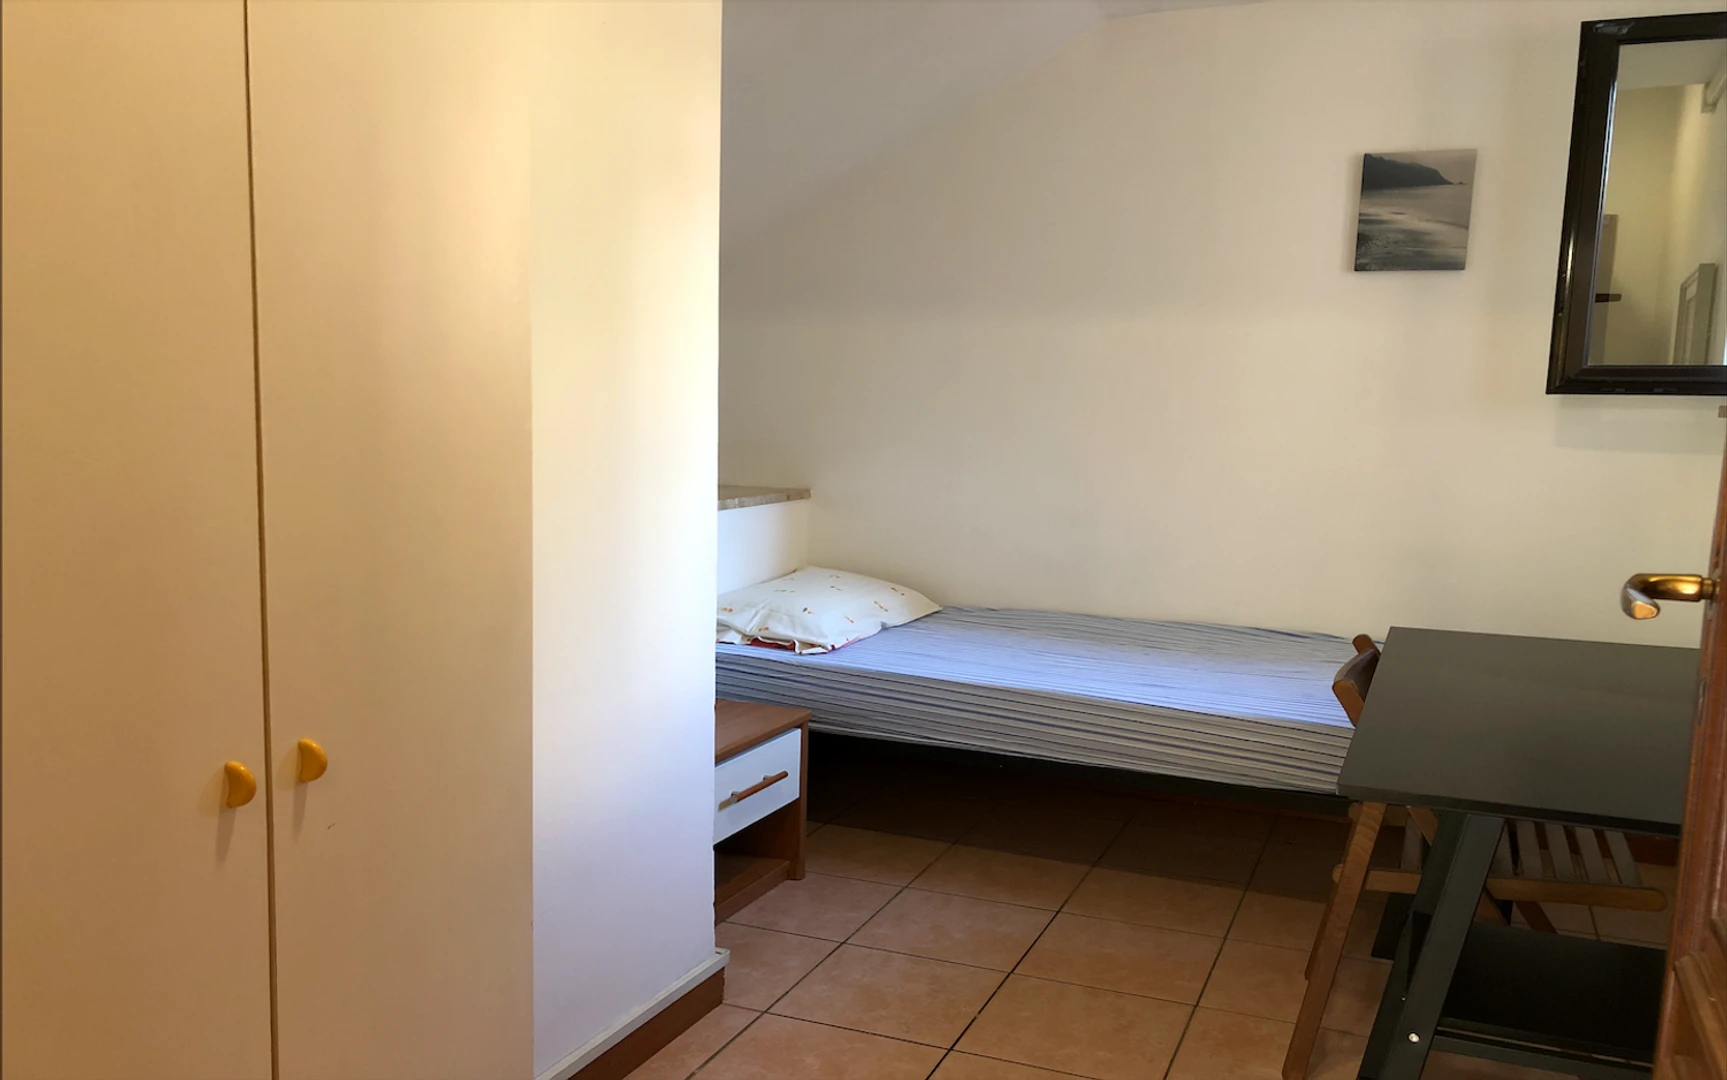 Alquiler de habitación en piso compartido en Roma